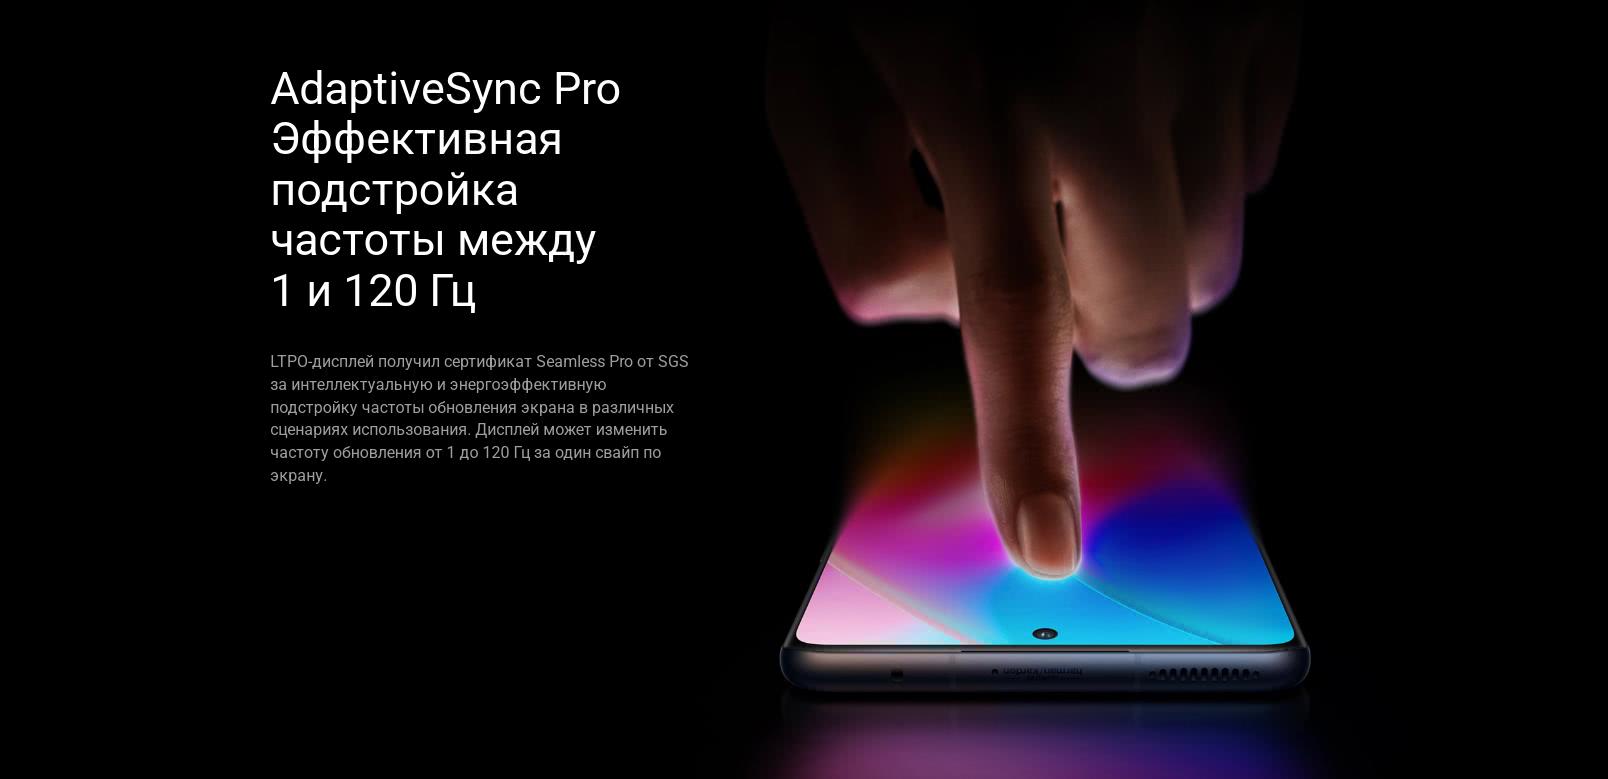 Xiaomi 12 Pro AdaptiveSync Pro Эффективная подстройка частоты между 1 и 120 Гц